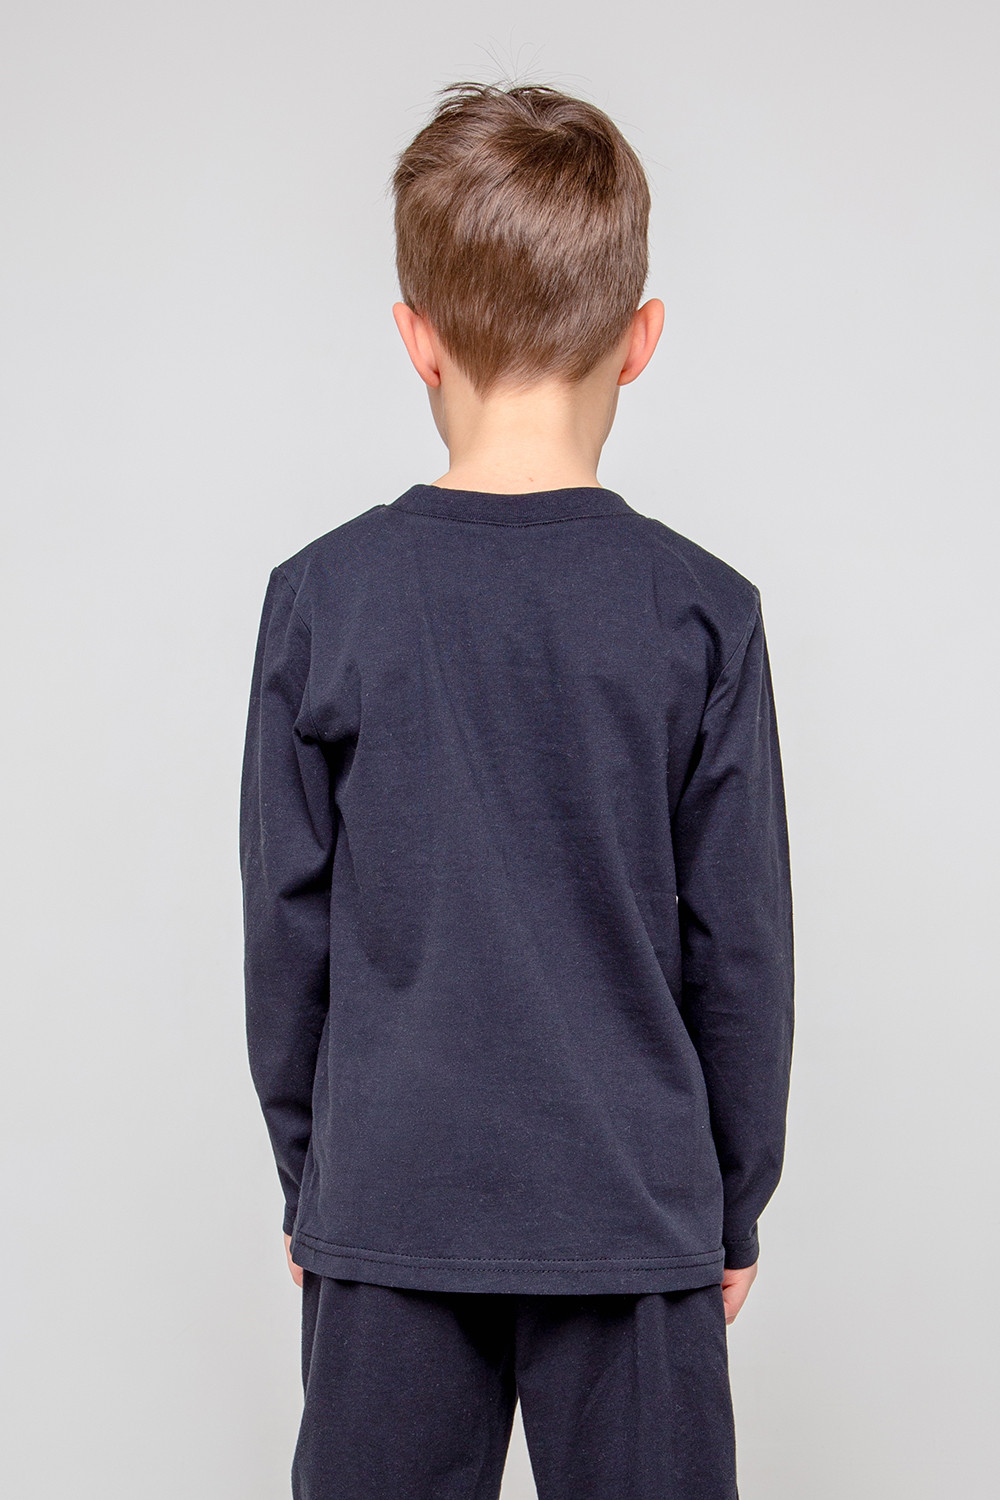 картинка Джемпер для мальчика Crockid КР 301910 черный к356 от магазина детских товаров ALiSa